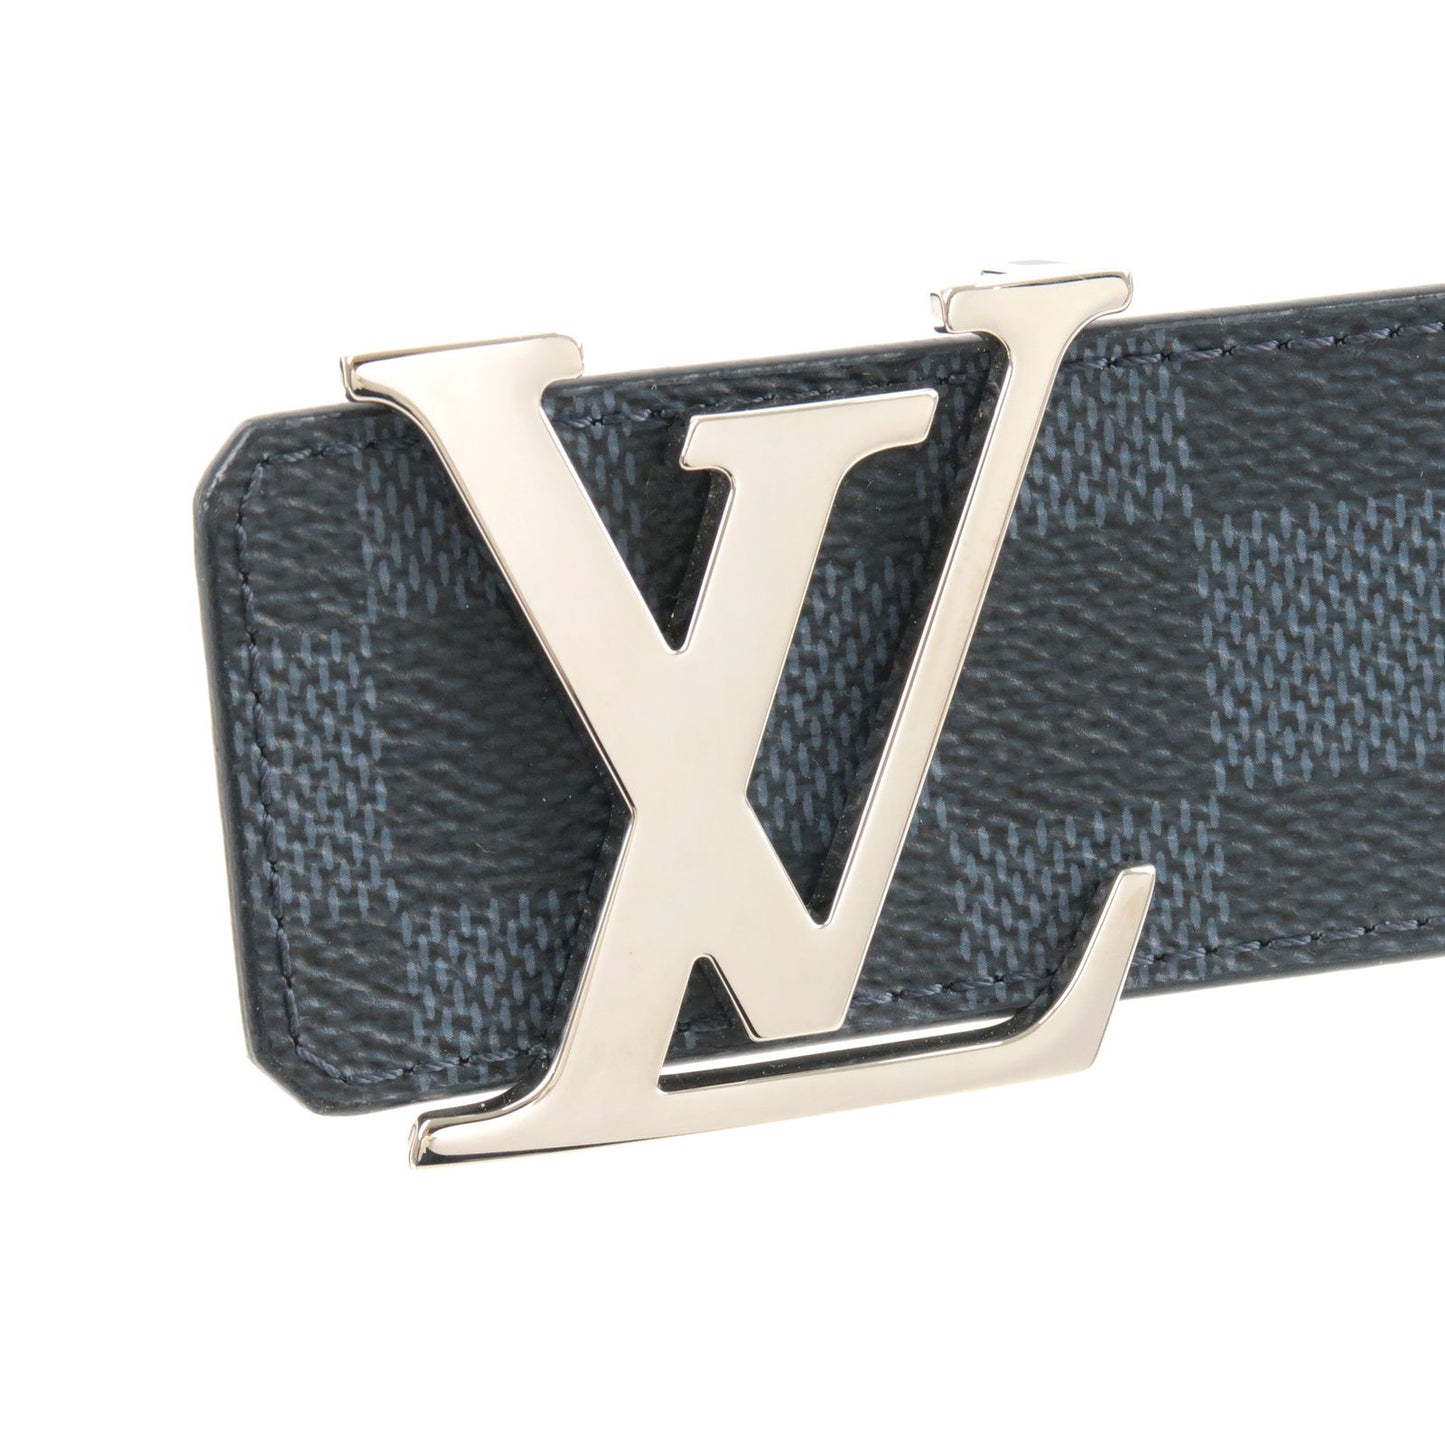 Louis Vuitton M6067 Damier Cobalt Sainteur Pont Neuf Belt –  archangelauthentics